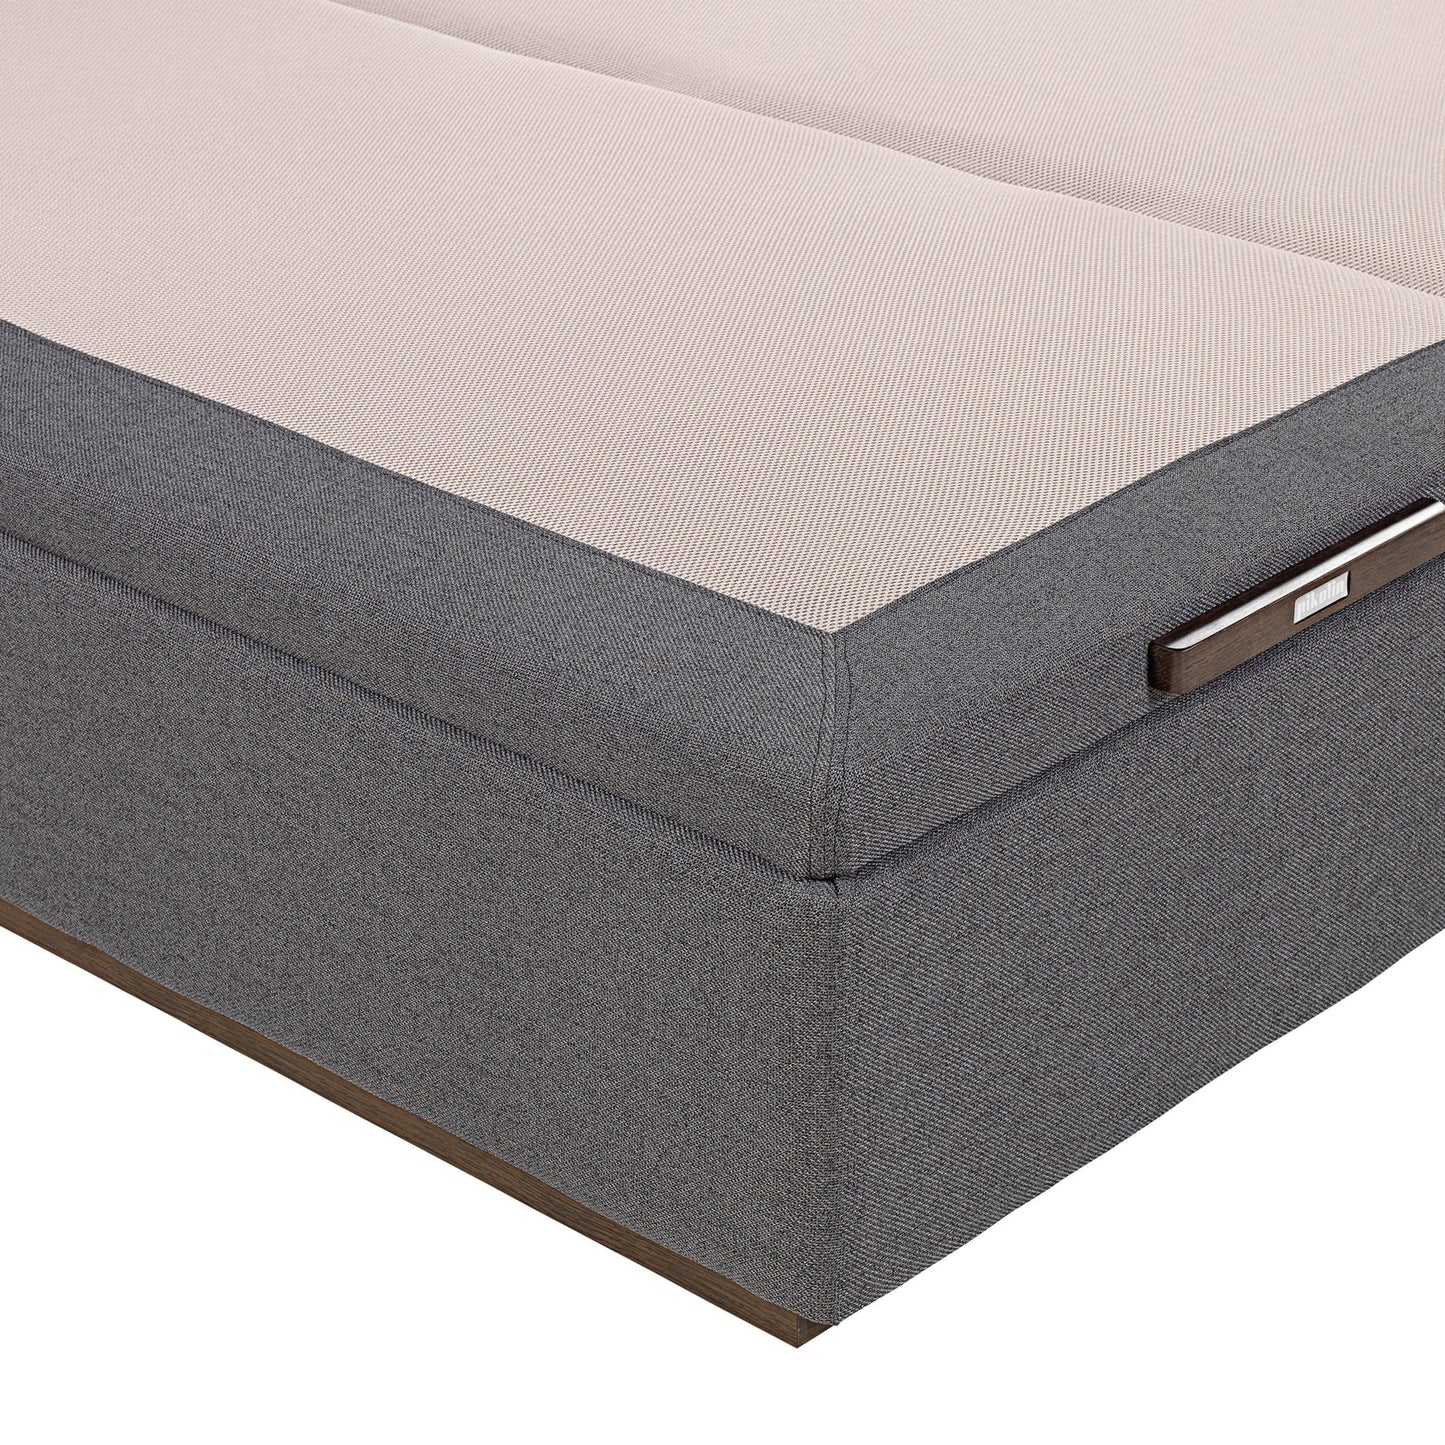 Canapé abatible de tapa doble de color piombo - TEXTIL - 150x182